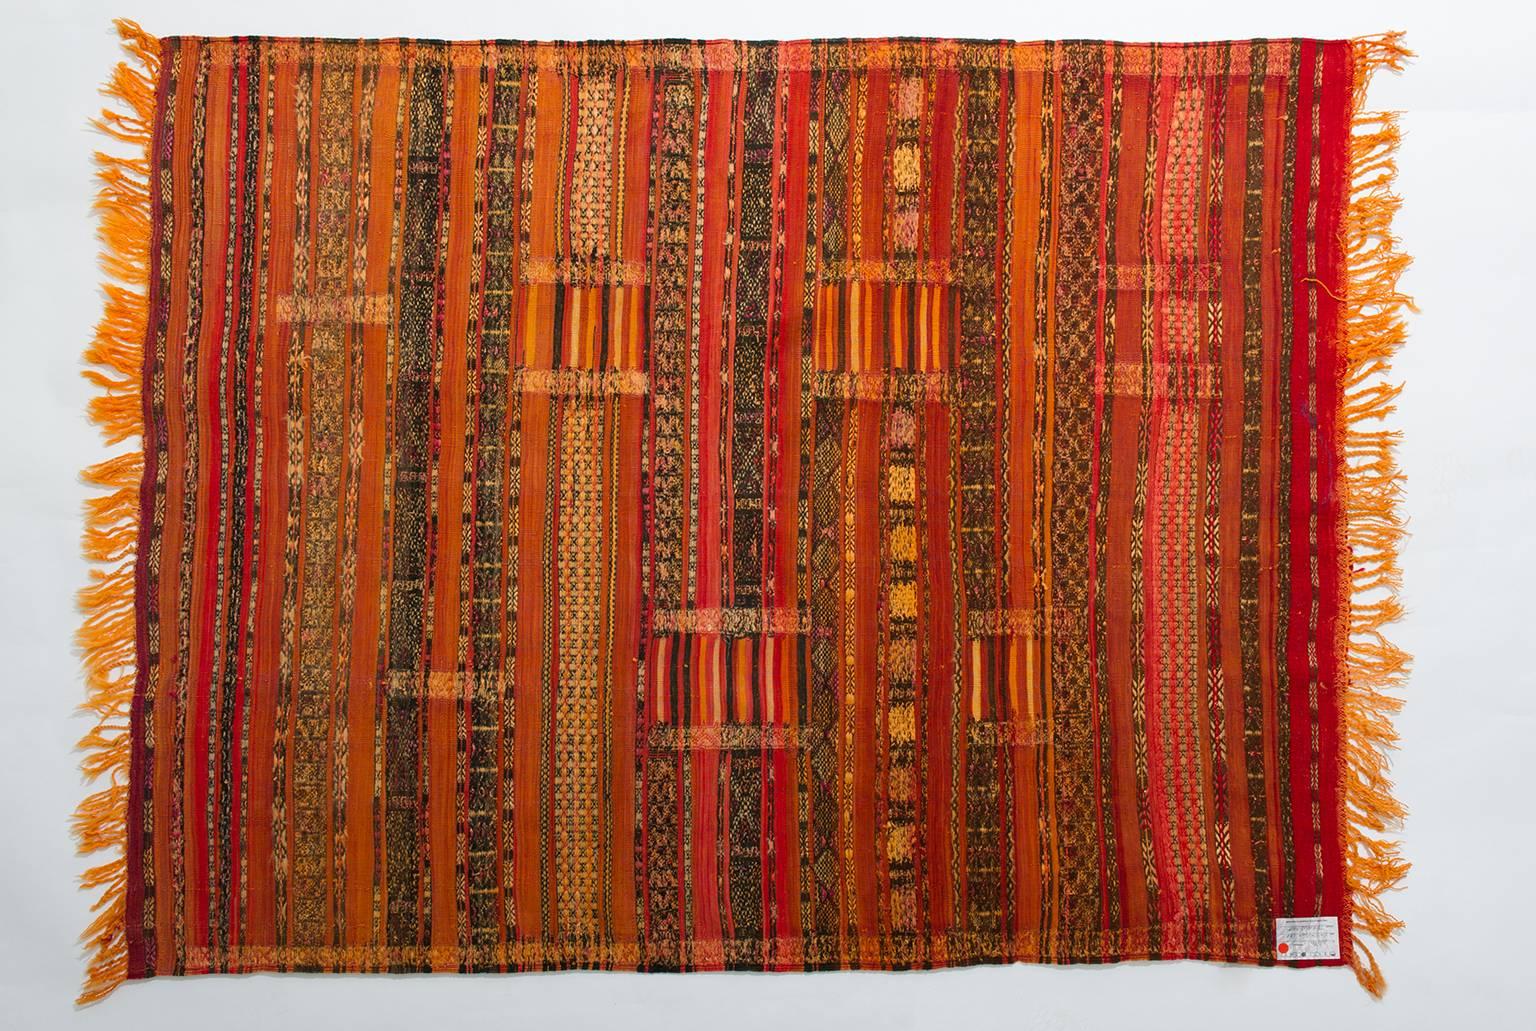 Ancien et très rare Taraudant, textile marocain en soie du Alto Atlante (Haut Atlas).
Intéressant pour la décoration murale -
(nr. 1119 ) de collection privée -- 